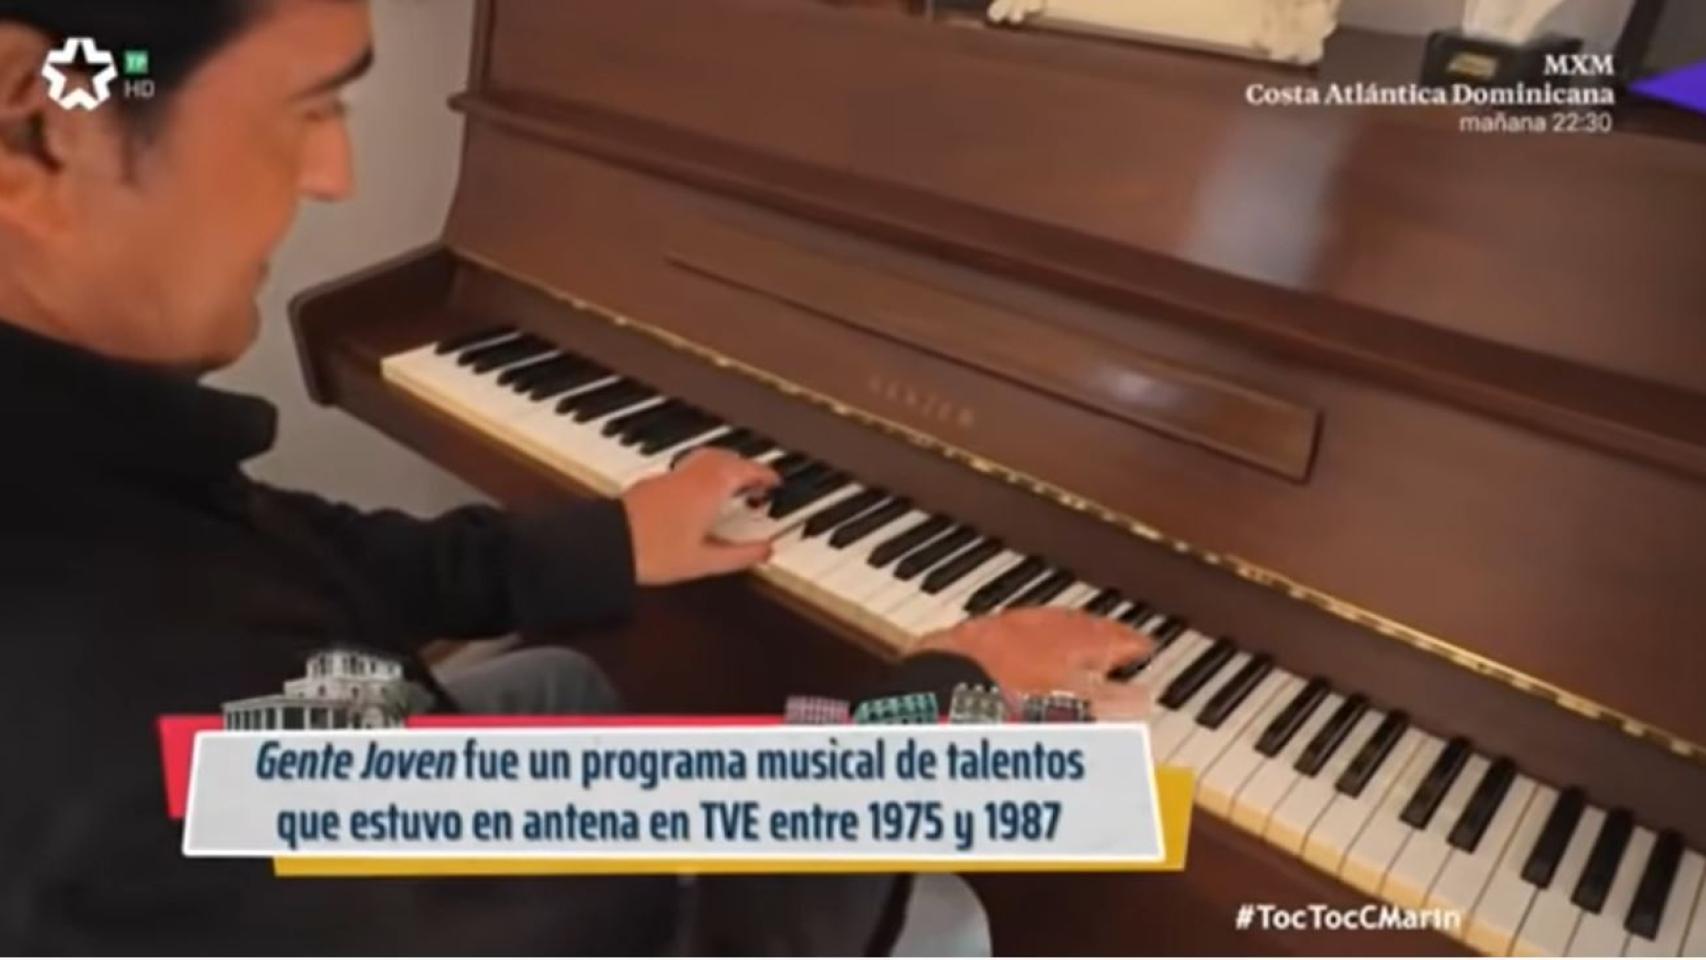 El piano que se compró Marín gracias a su participación en el programa 'Gente joven'.